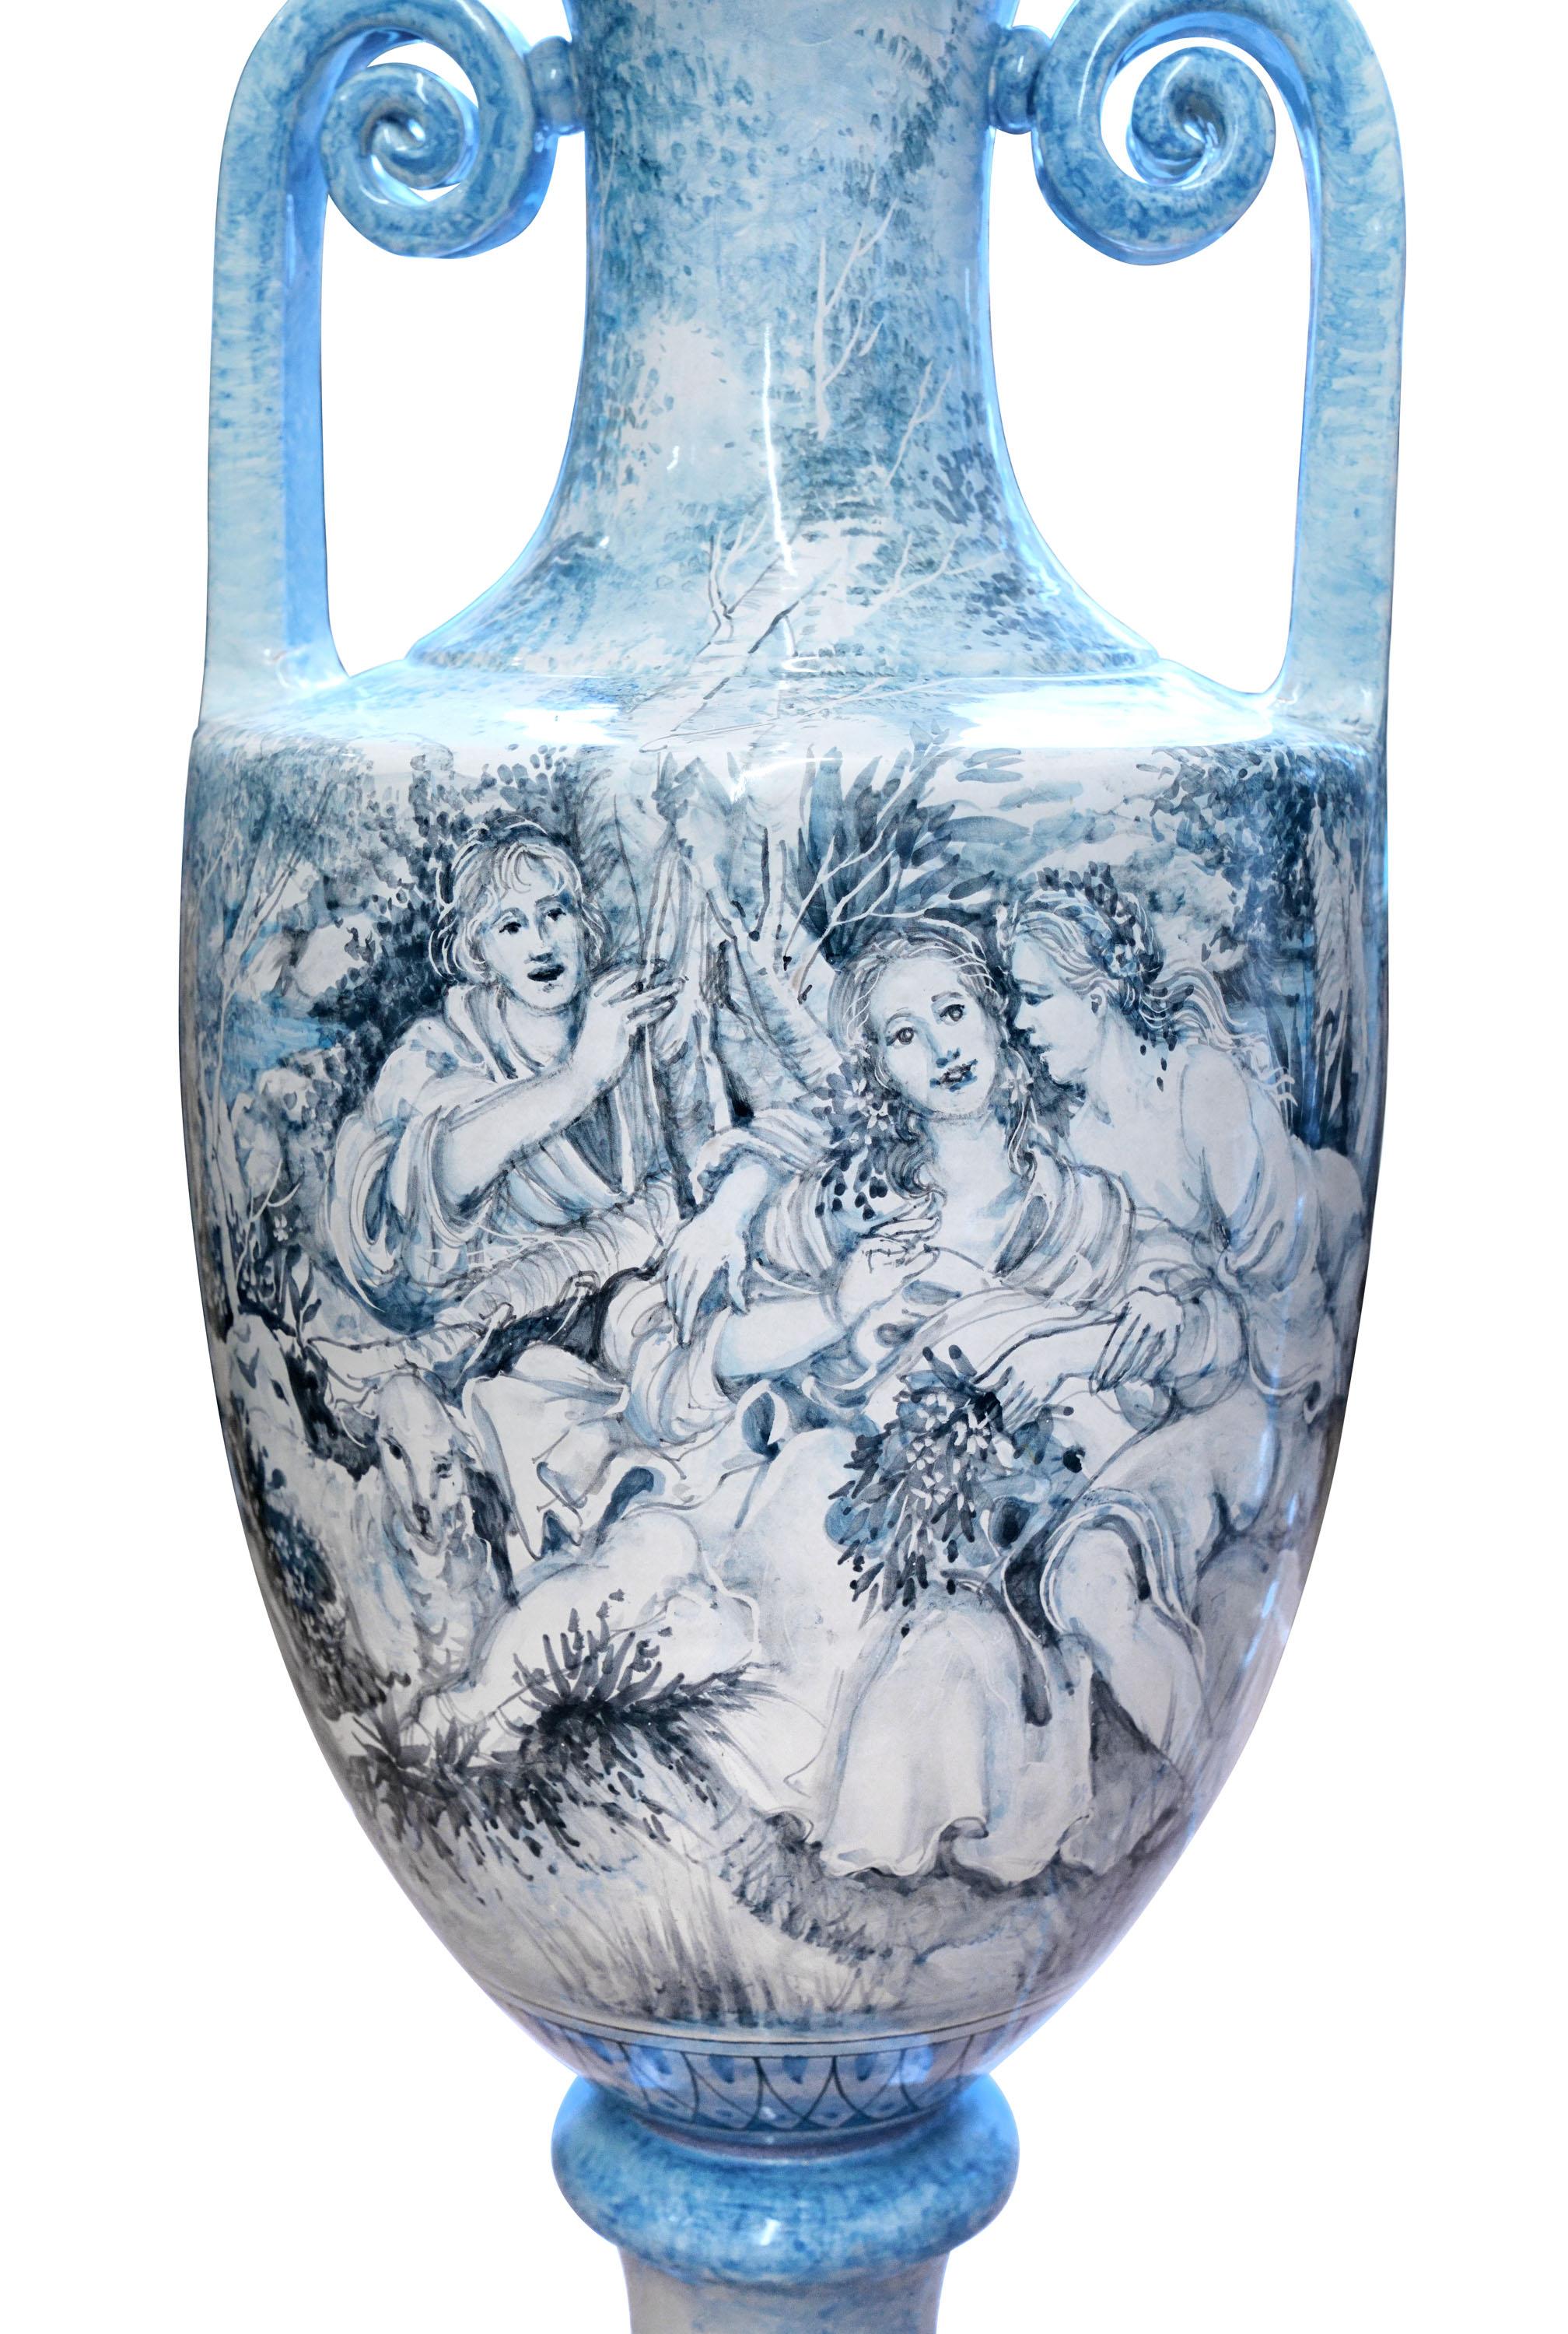 Große Amphore aus Keramik mit Henkeln, vollständig von Hand gefertigt und bemalt, Produktion in Mittelitalien, Jahr 2009. Das Dekor der Vase ist eine detailgetreue Reproduktion eines Gemäldes von Francois Boucher, das in Hellblau und Hellgrau